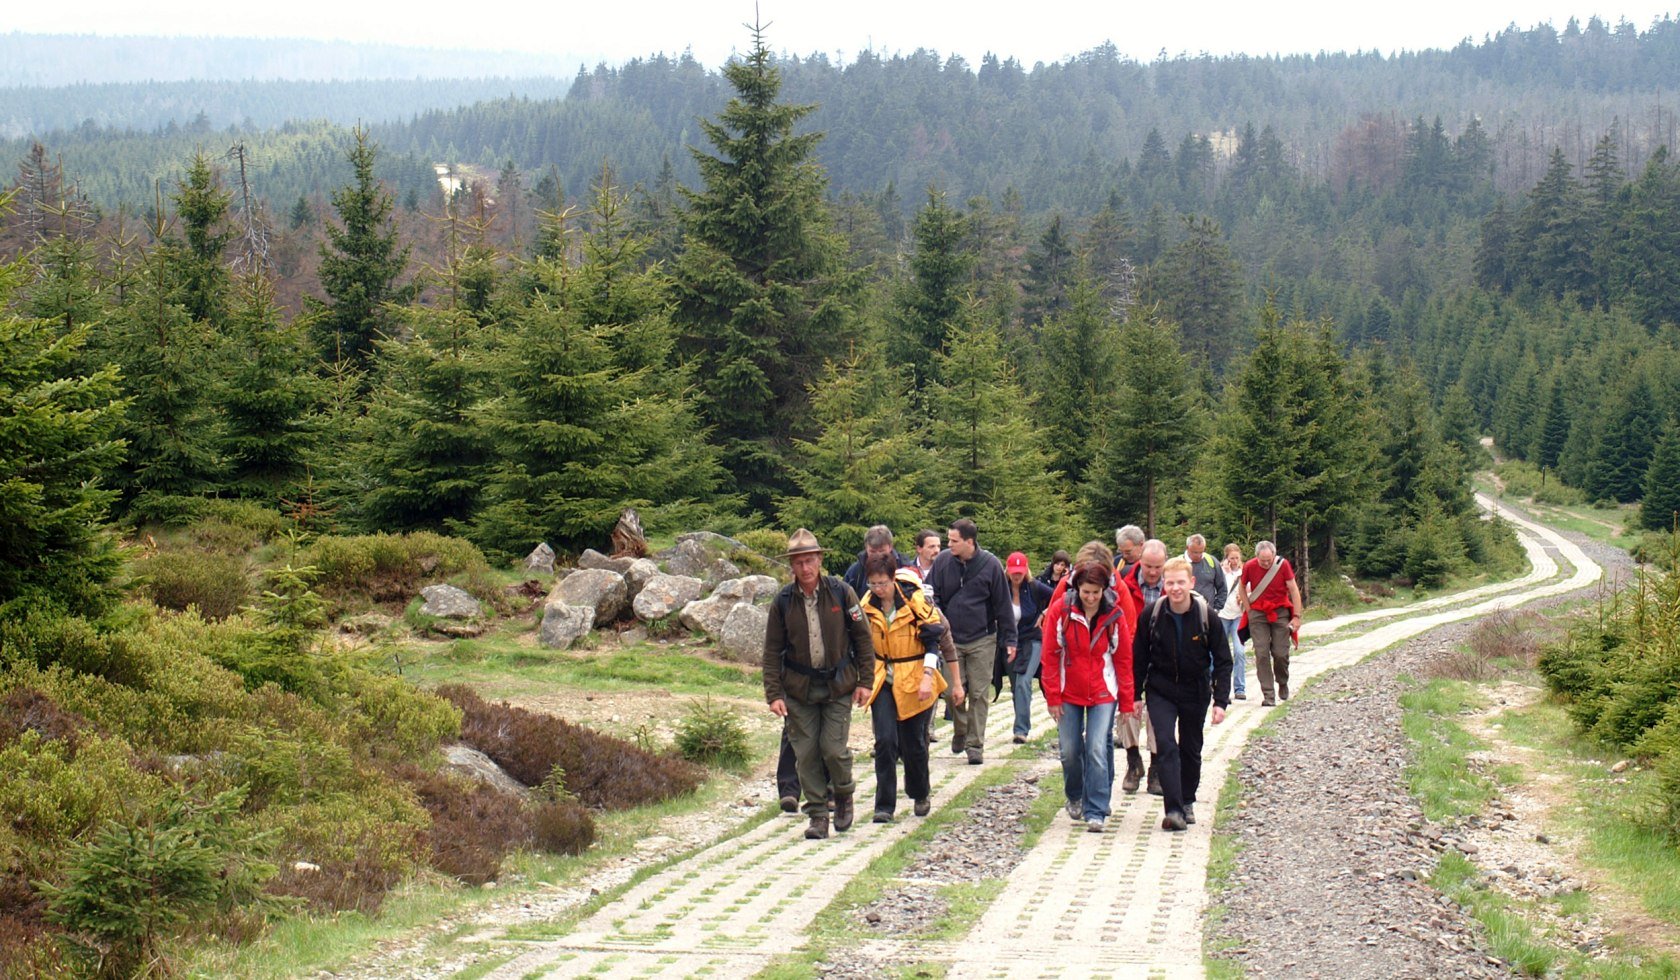 Wandere wandern vor grünen Tannen., © Harzer Tourismusverband